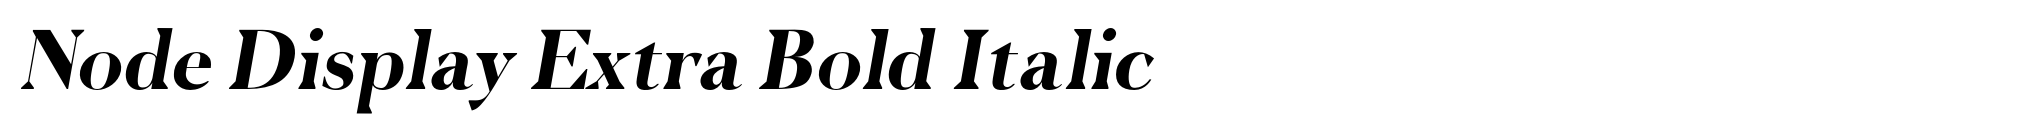 Node Display Extra Bold Italic image